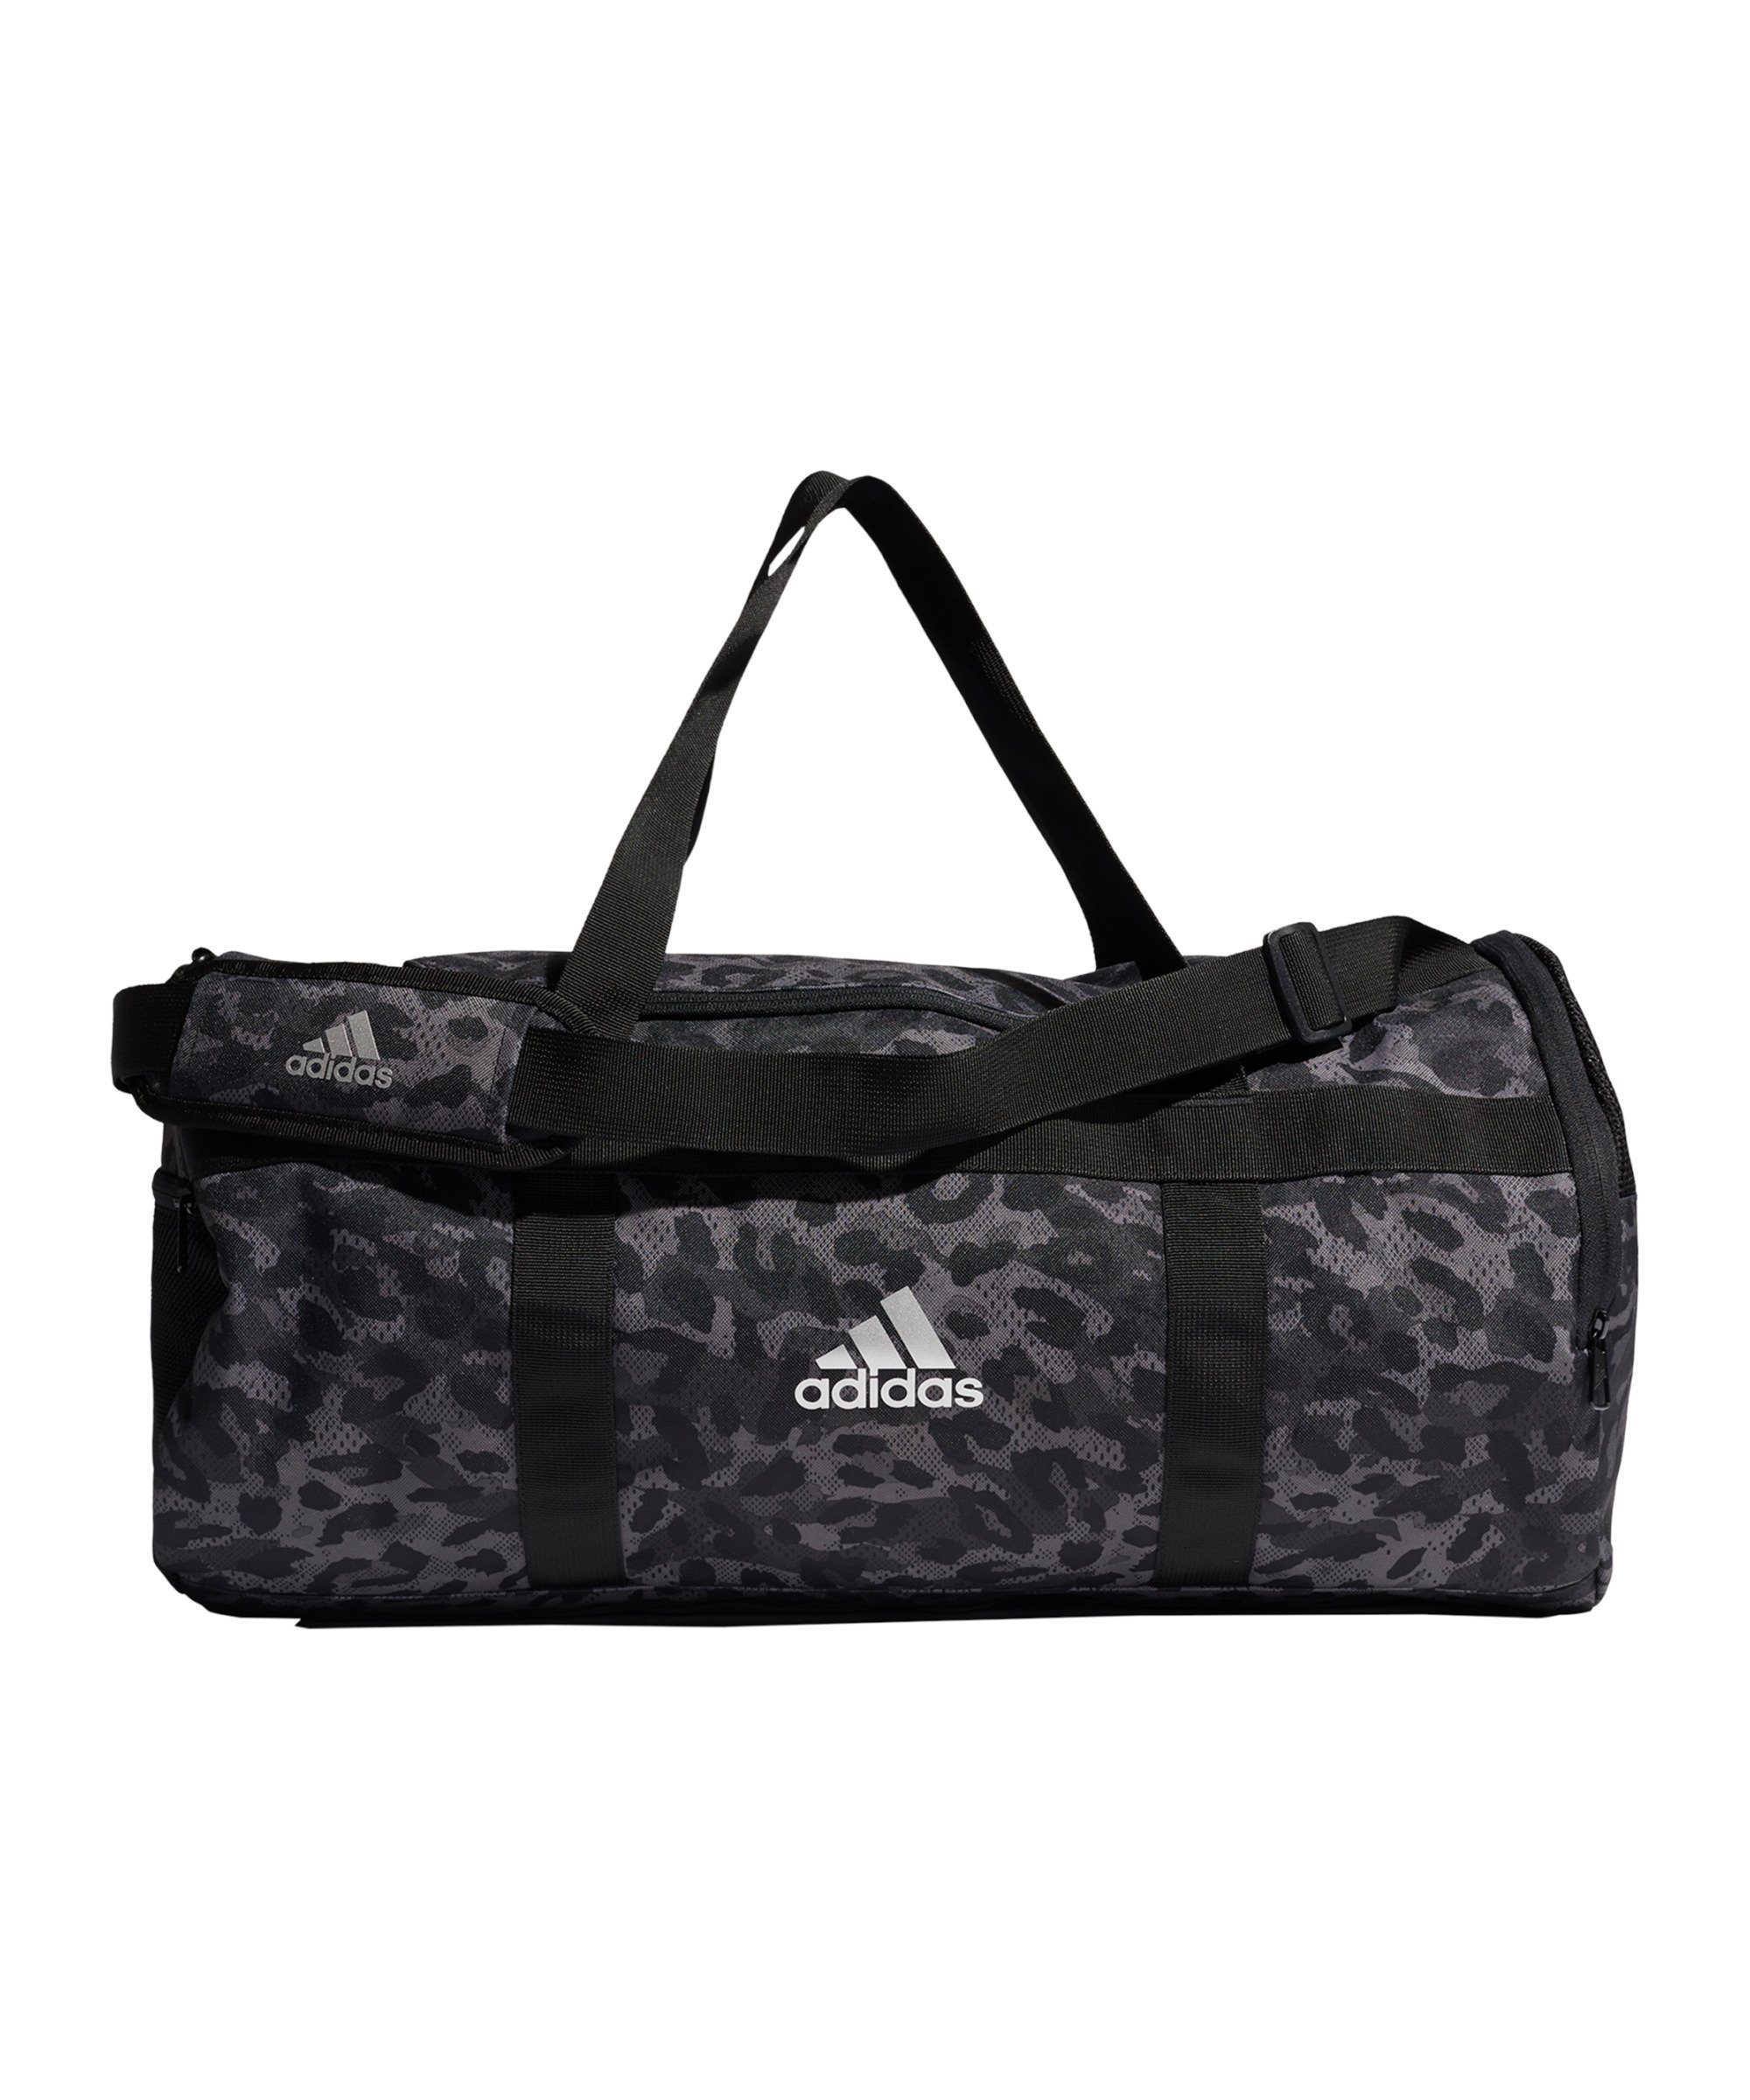 adidas Performance Sporttasche 4 Athlts Leopard Camo Duffel Bag, Schulter